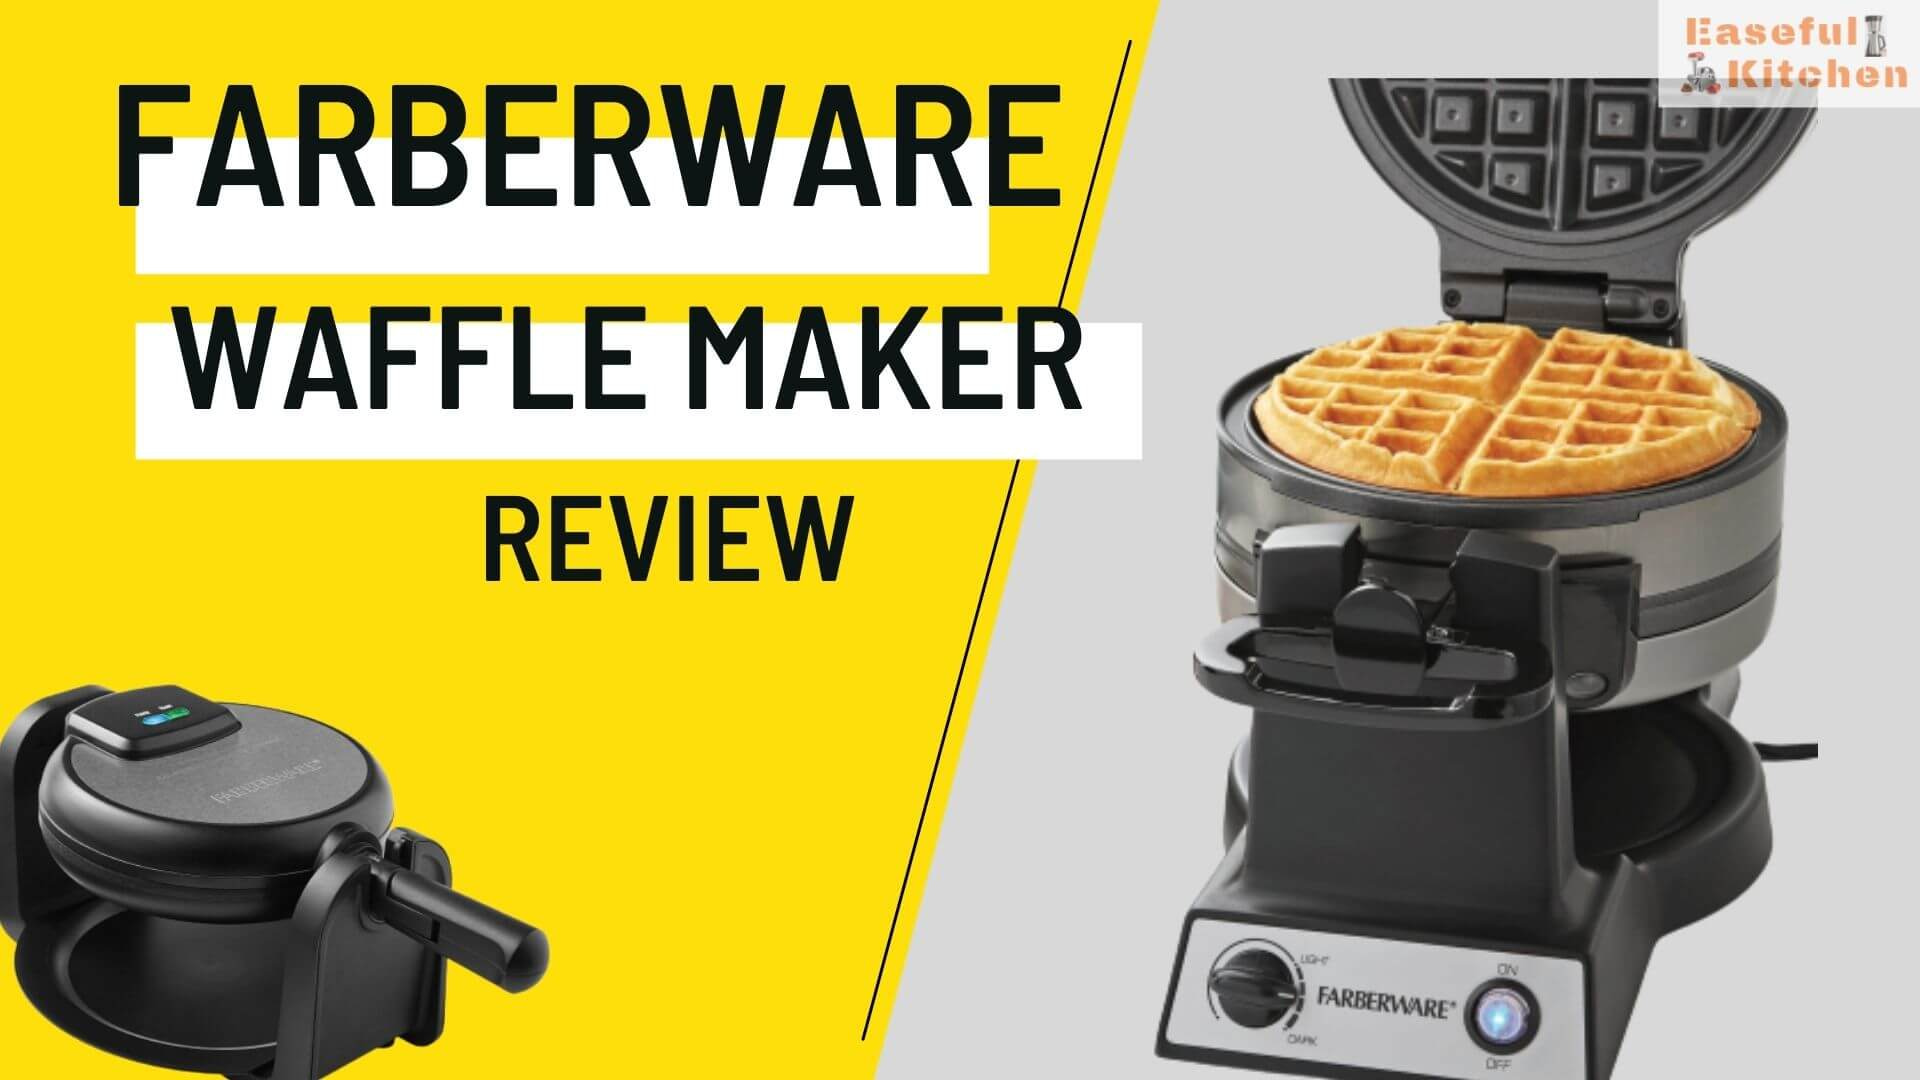 Farberware Waffle Maker Review